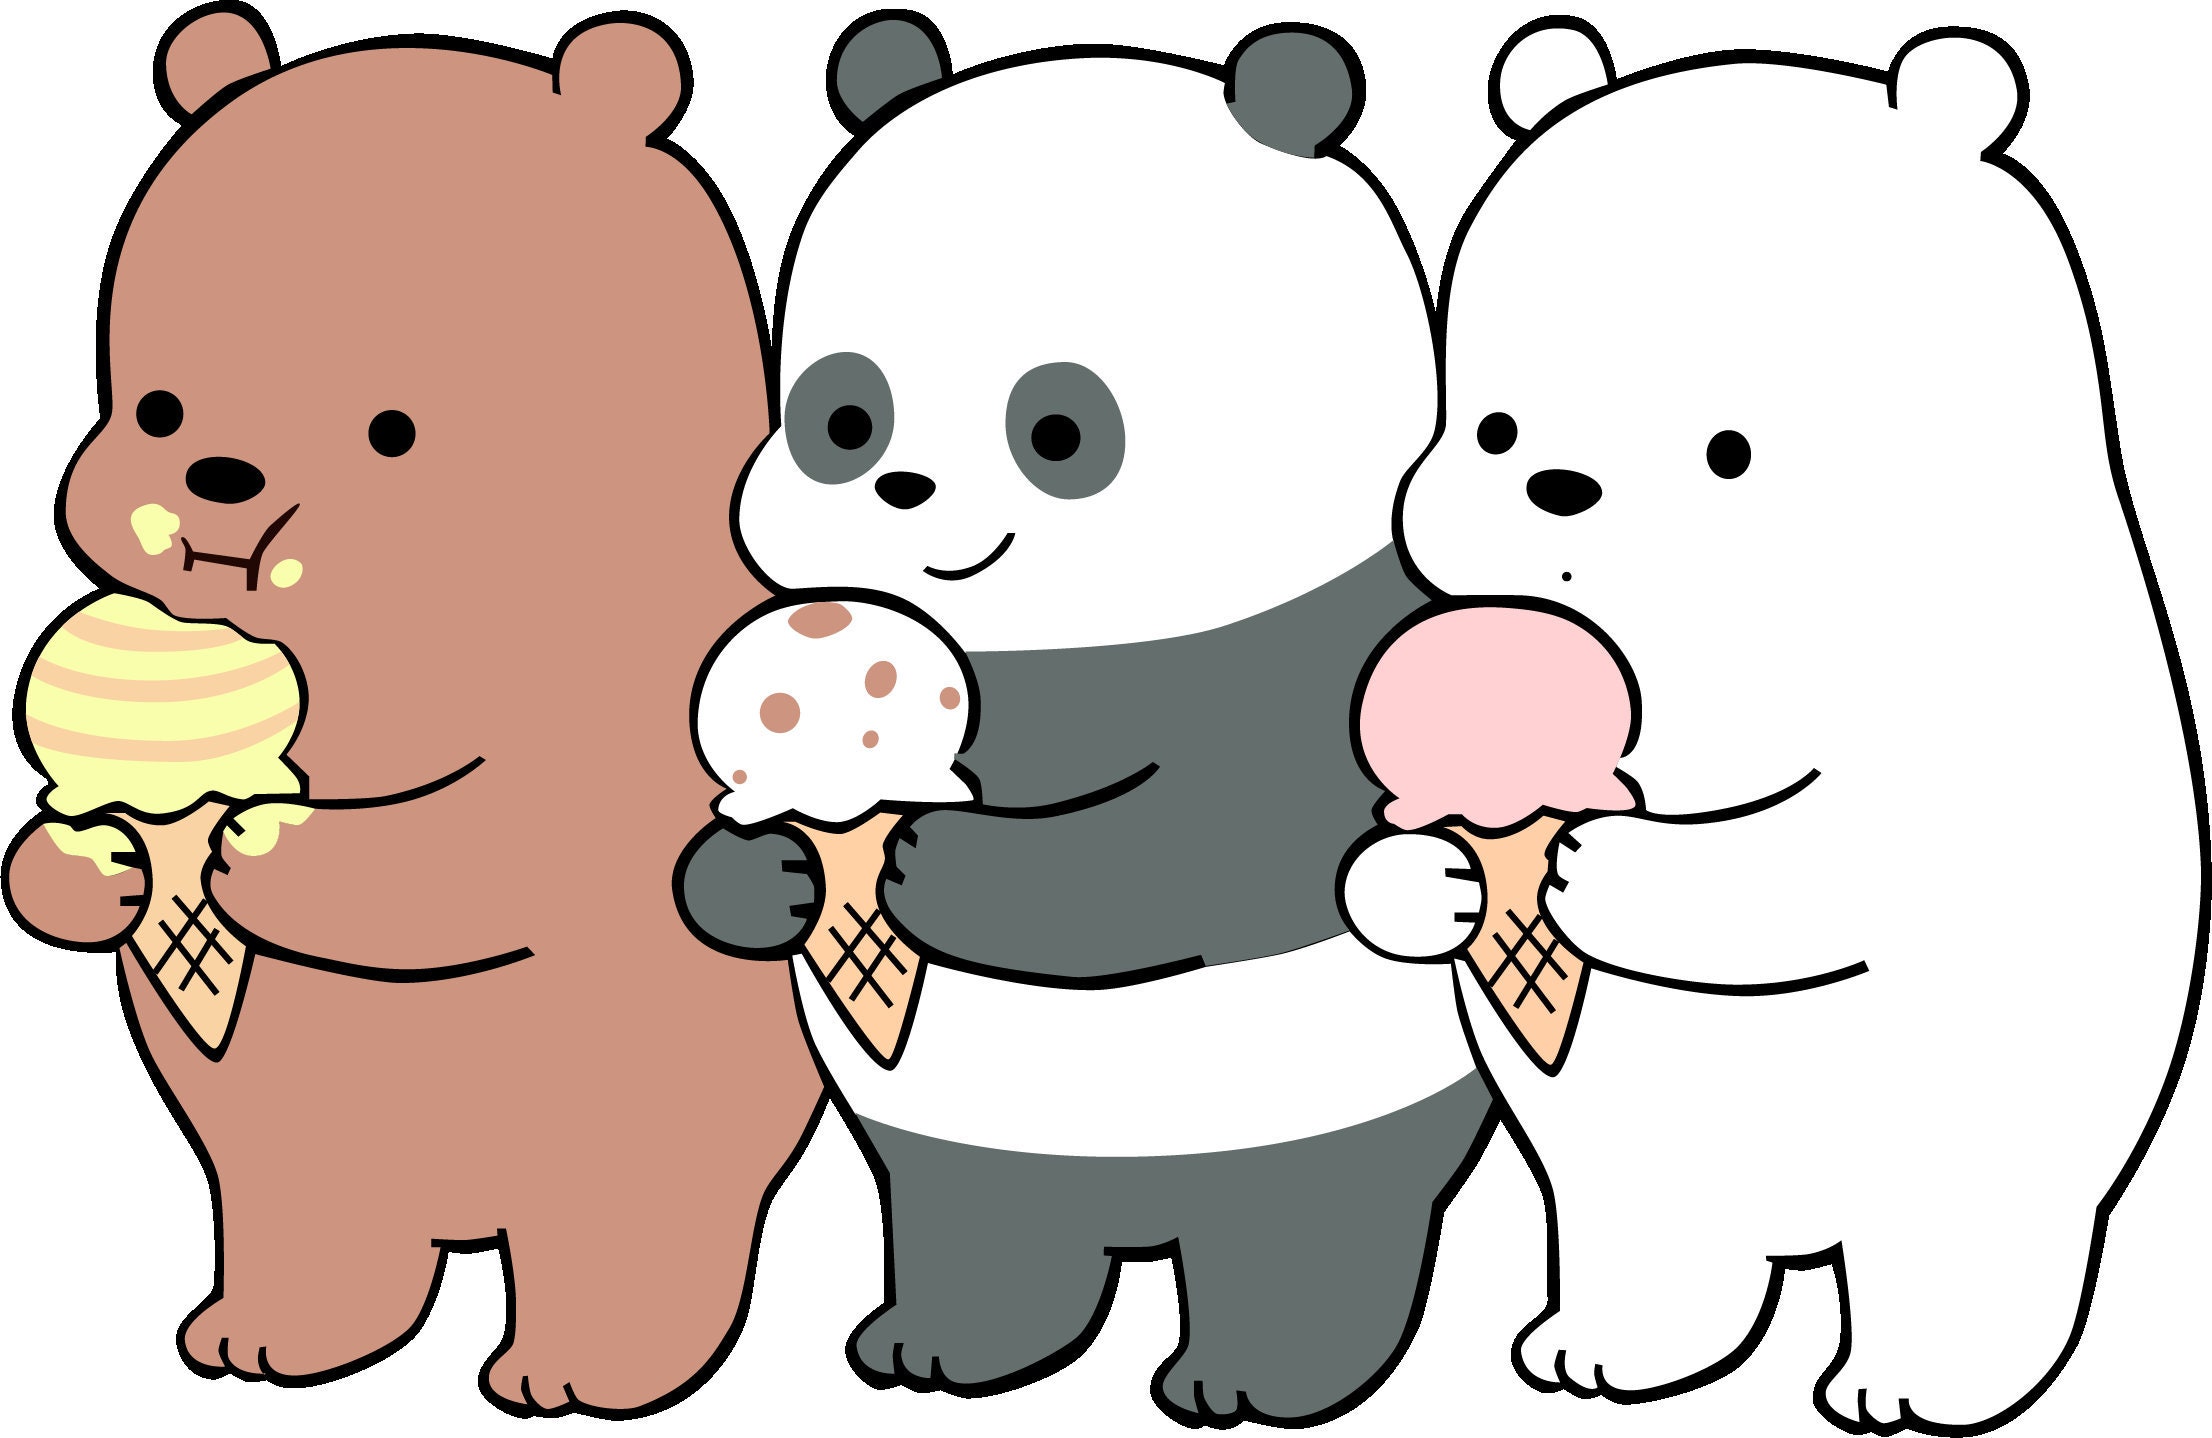 We bare bears svg cartoon clip art polar bear svg grizzly | Etsy